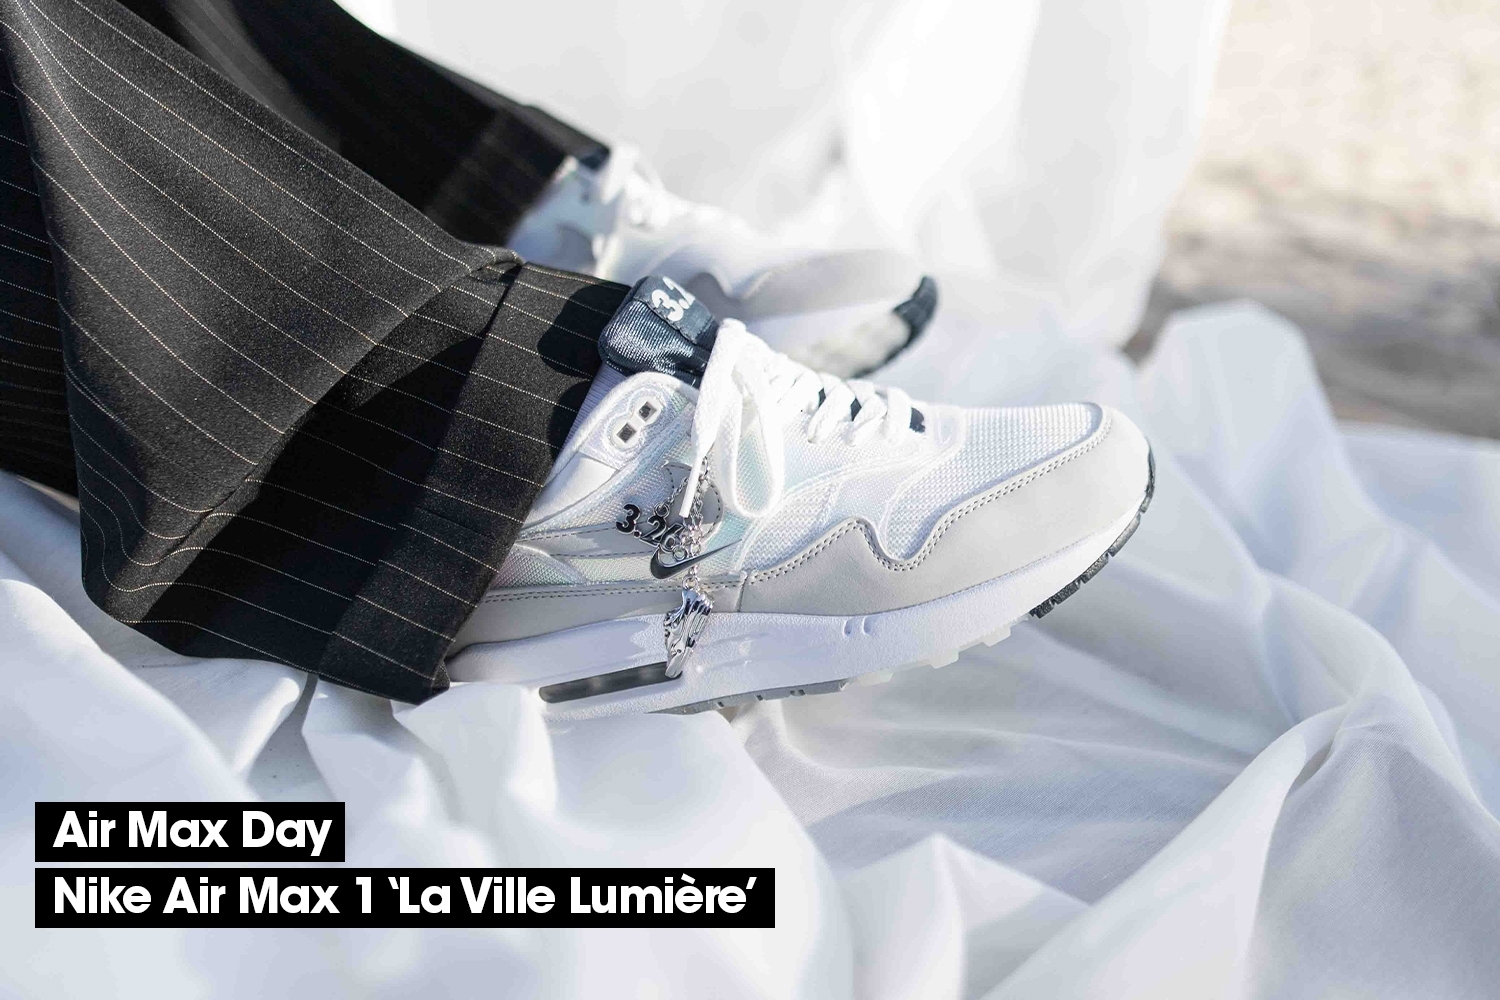 Air Max Day - Nike Air Max 1 'La Ville Lumière'